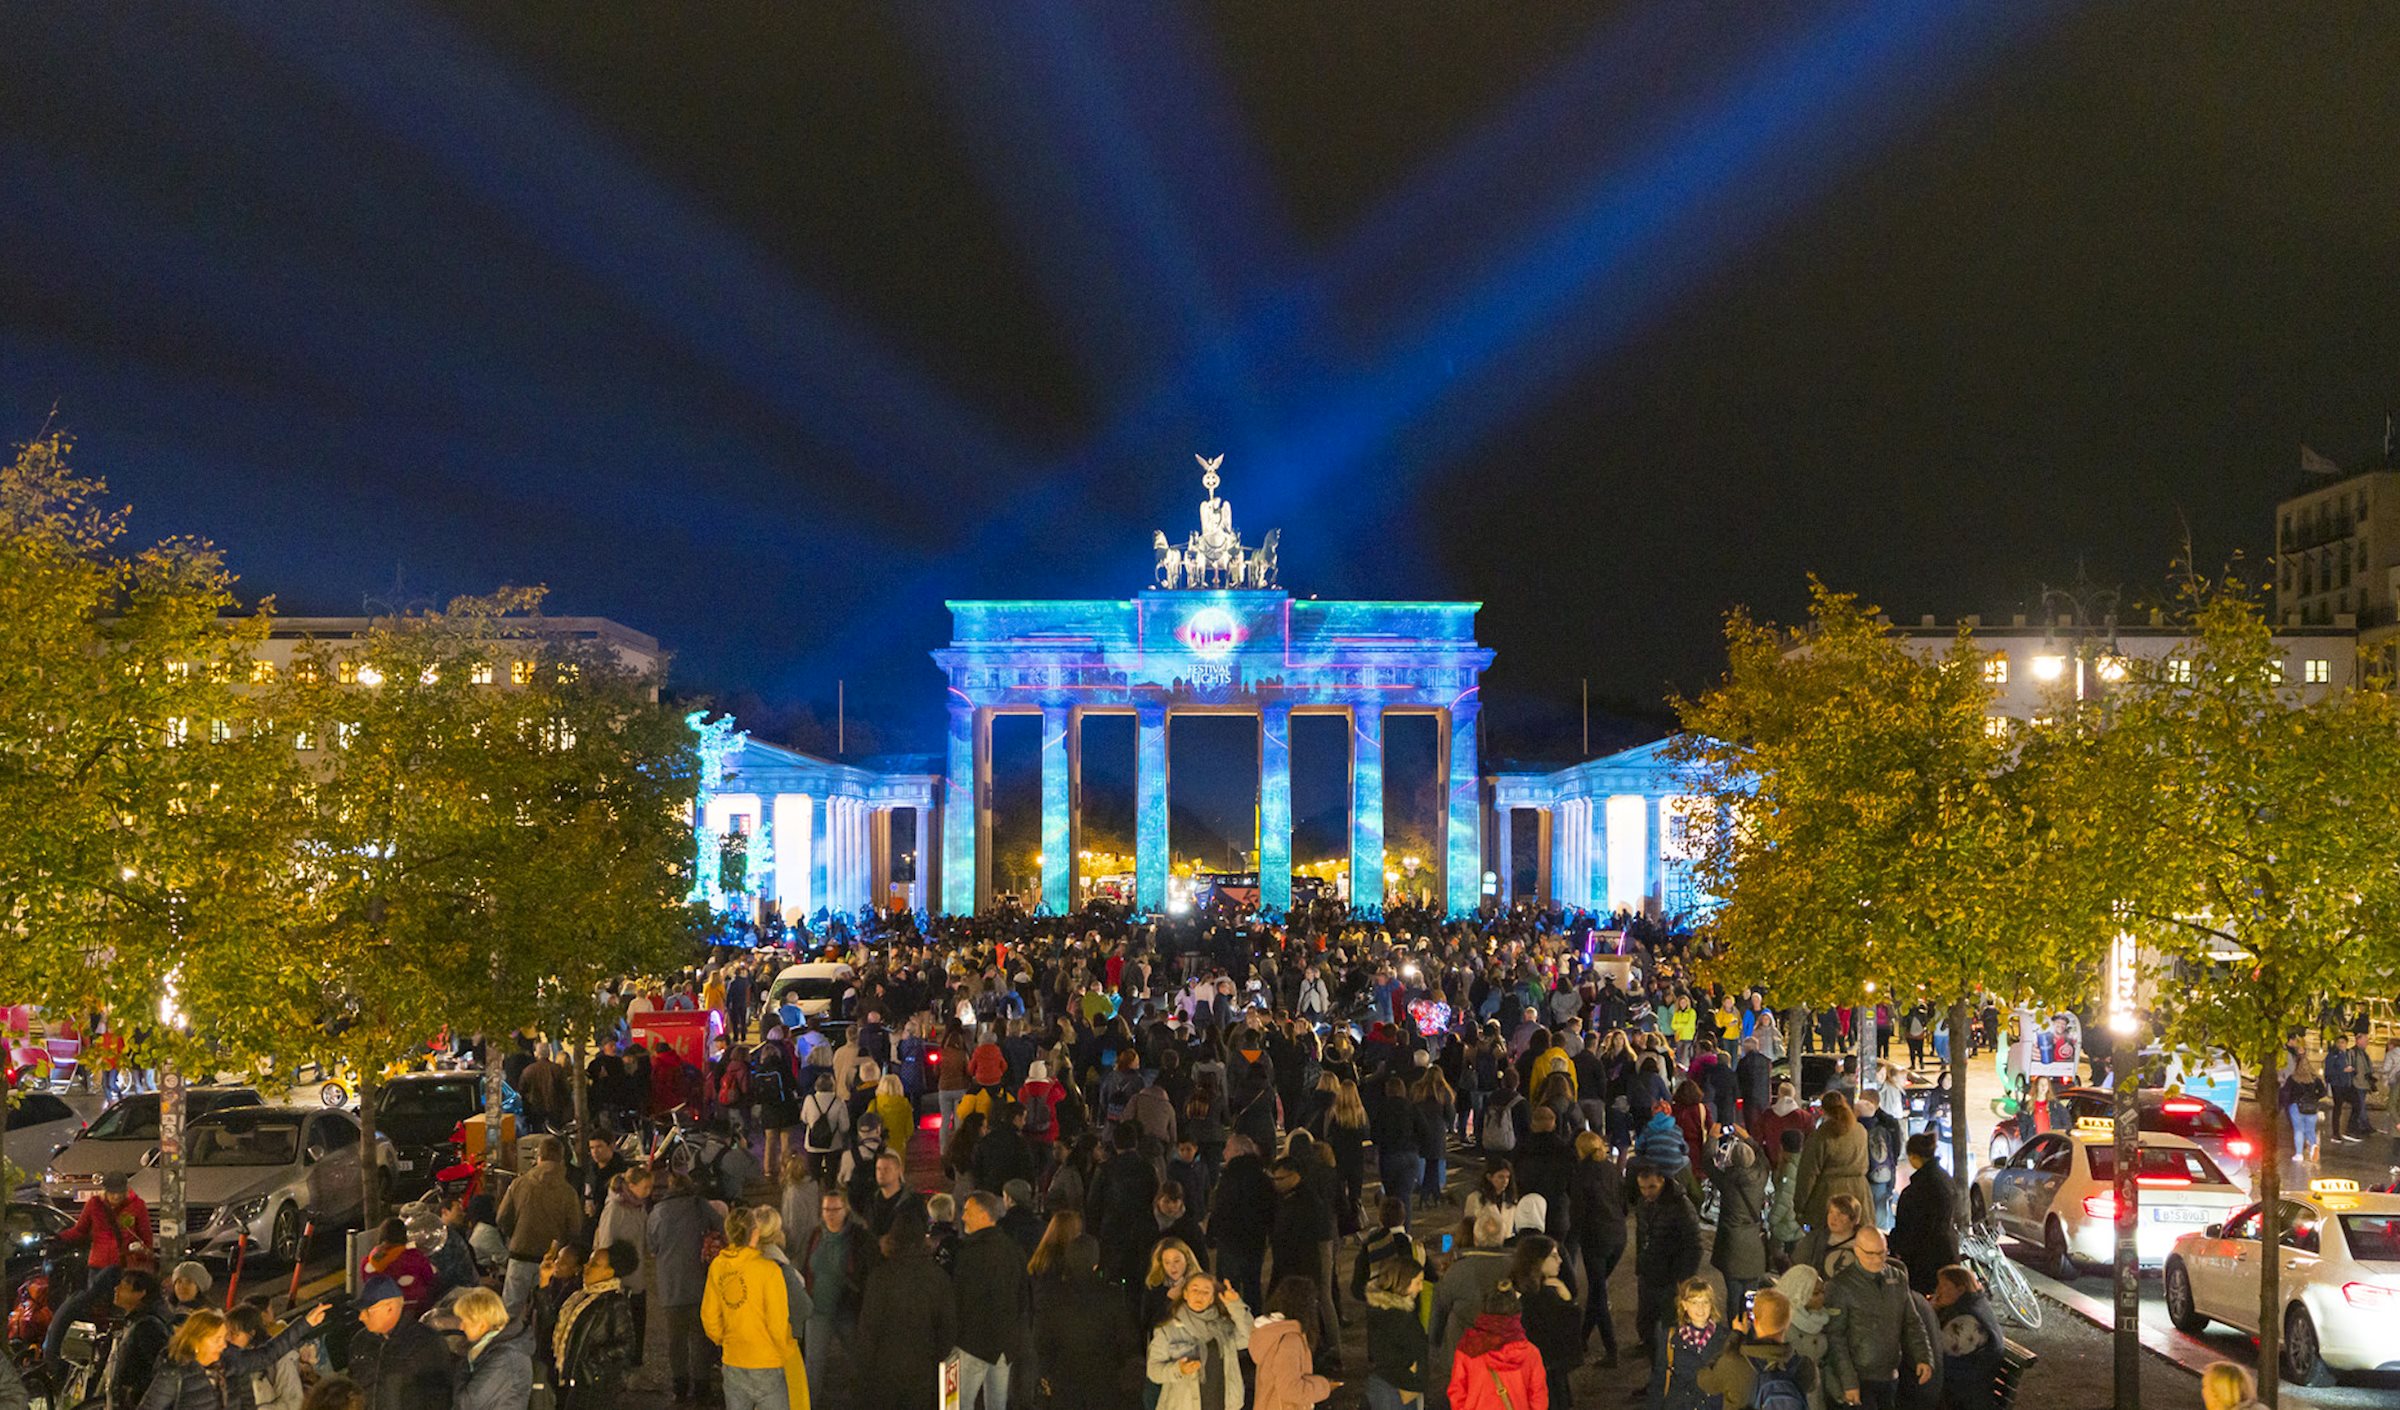 PRG fue uno de los socios tecnológicos y recibió el encargo de instalar medios y tecnología de proyección en ocho lugares diferentes, entre ellos la Puerta de Brandemburgo y la Torre de Televisión de Berlín en el Festival de las Luces.